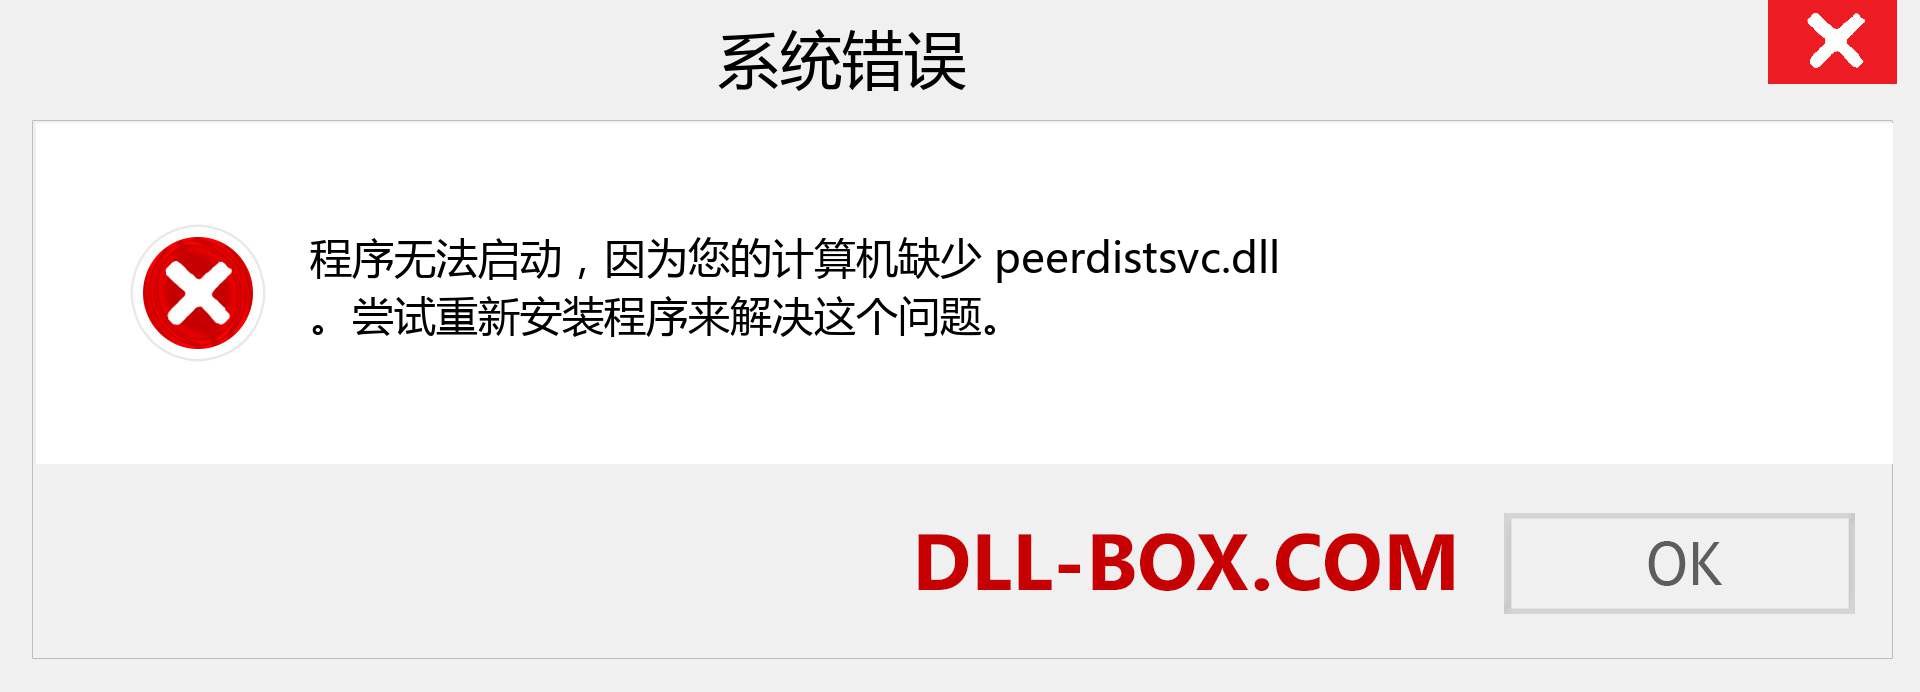 peerdistsvc.dll 文件丢失？。 适用于 Windows 7、8、10 的下载 - 修复 Windows、照片、图像上的 peerdistsvc dll 丢失错误